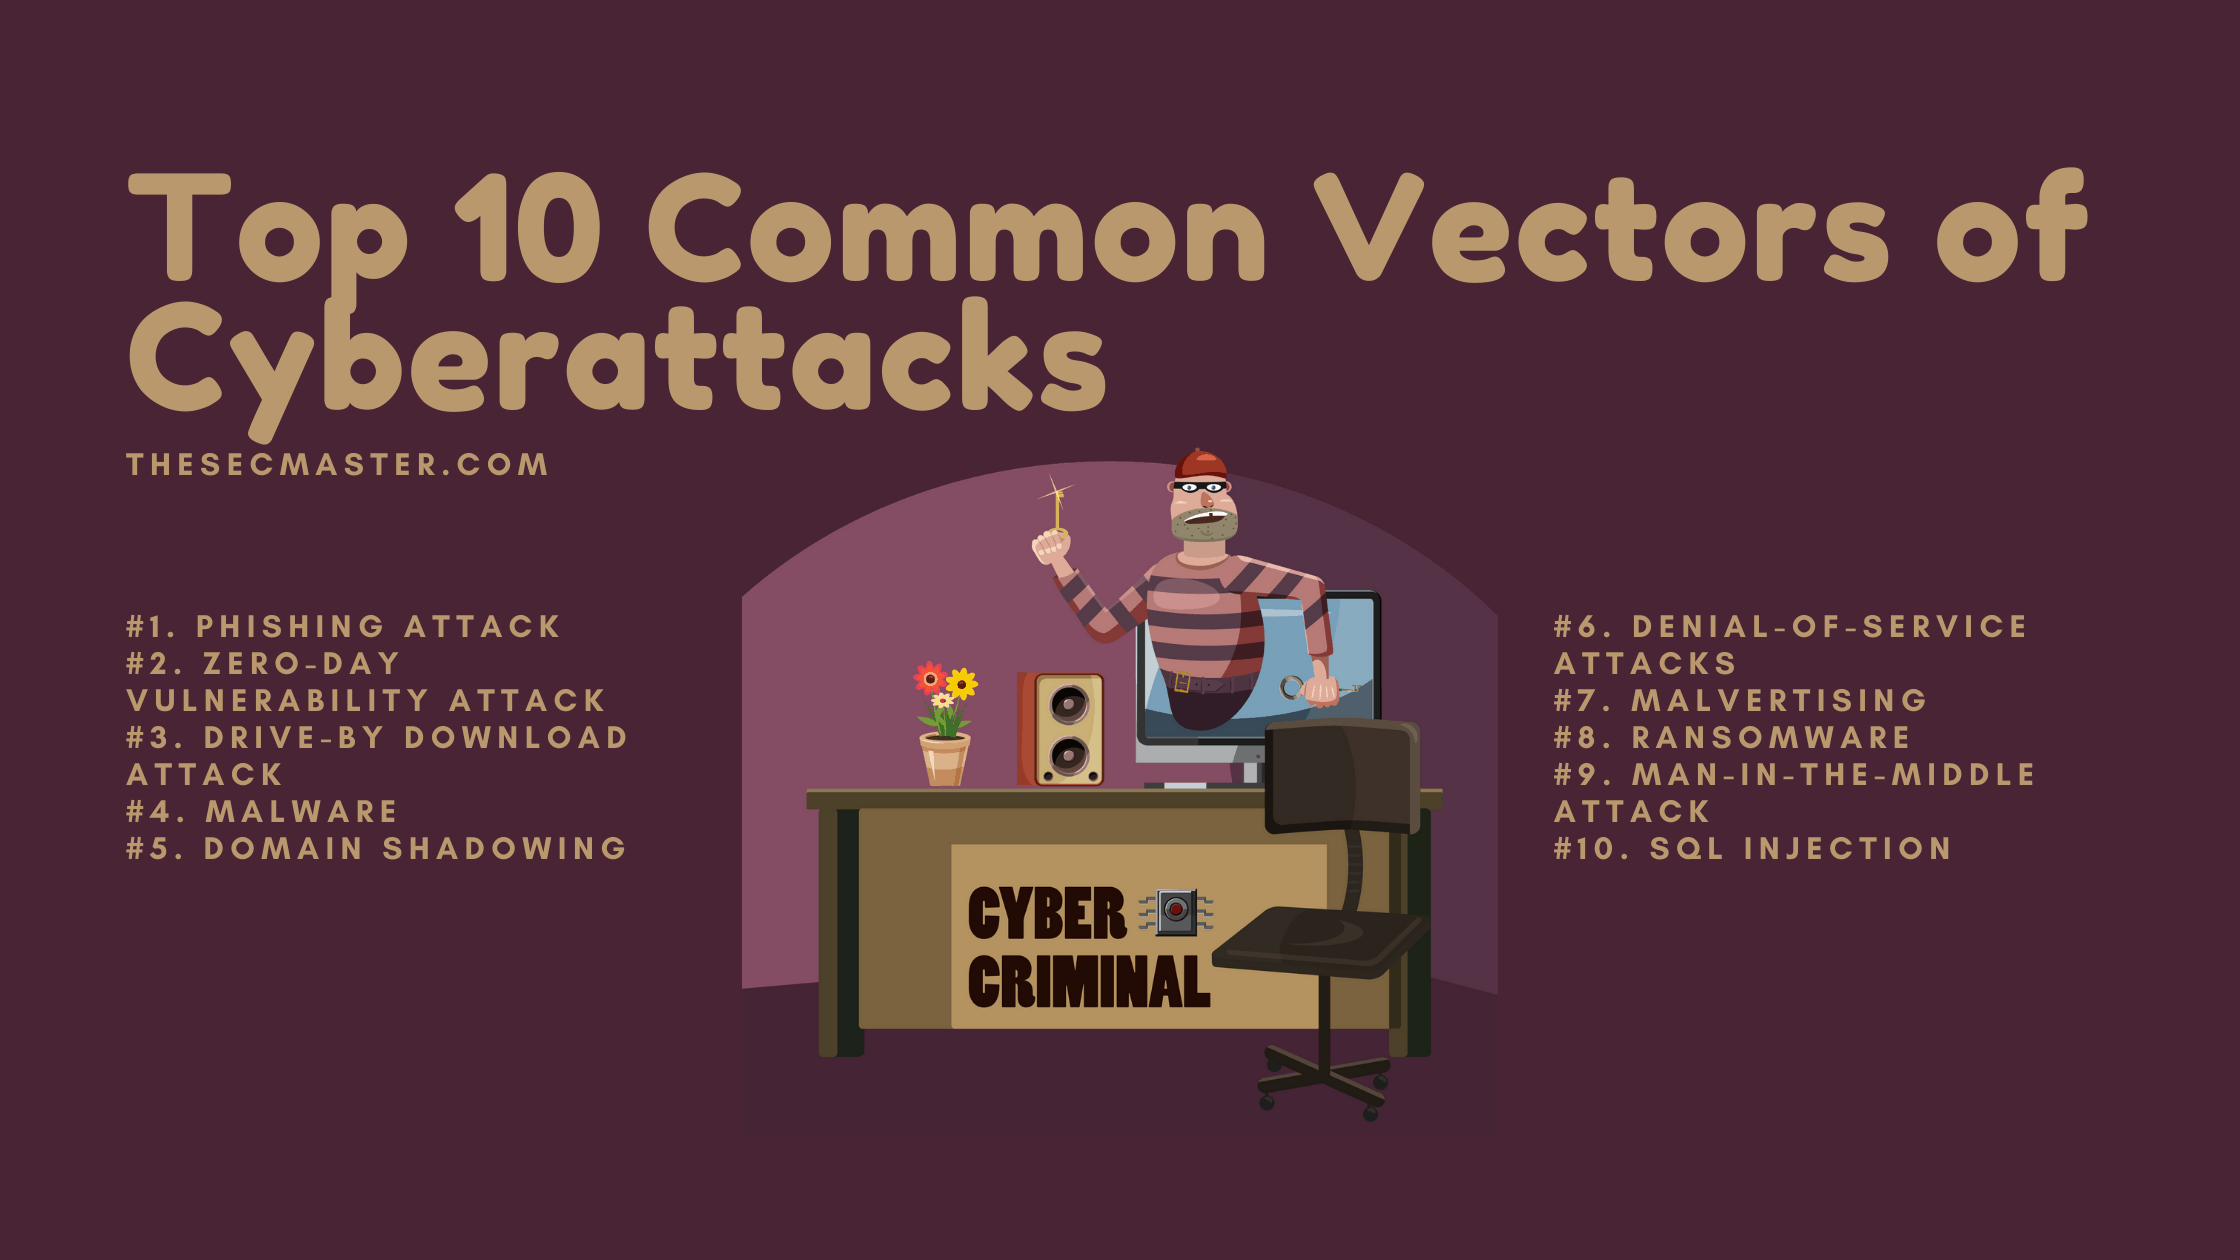 Top 10 Common Vectors Of Cyberattacks